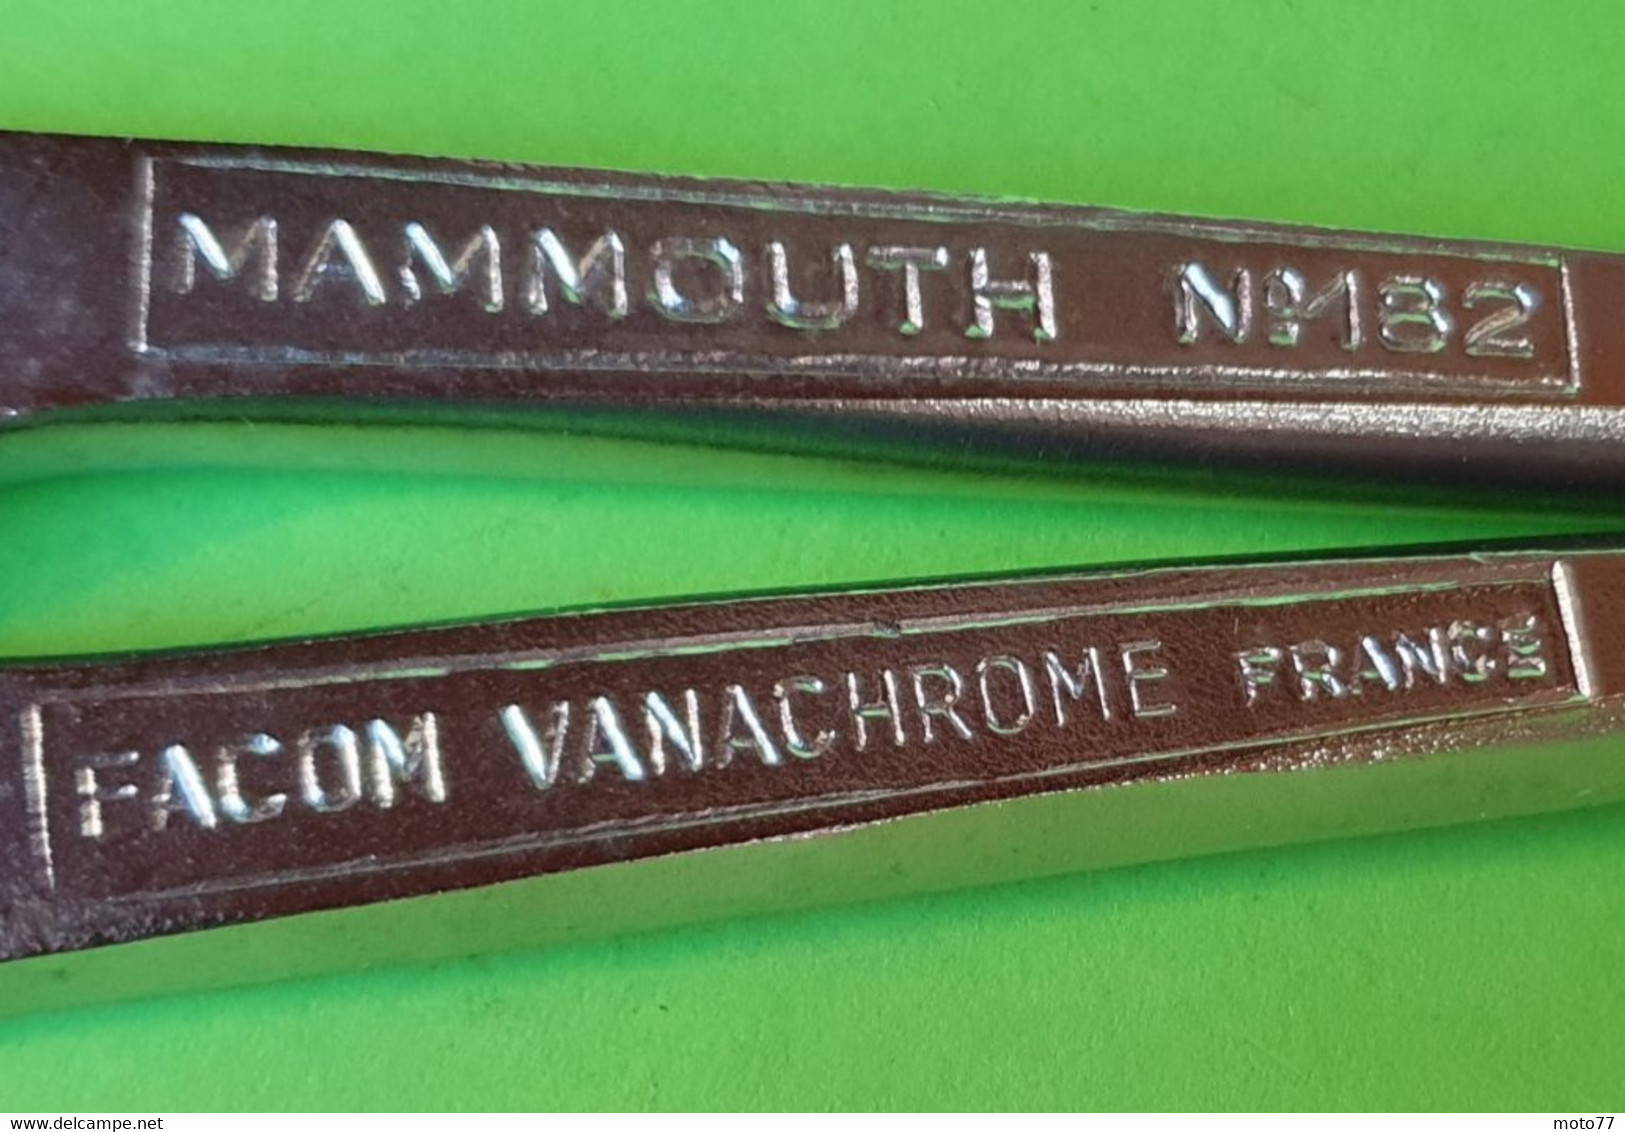 Ancien OUTIL spécial - PINCE MULTIPRISES géante MAMMOUTH 182 - Facom - métal - "Neuf de stock" - vers 1980